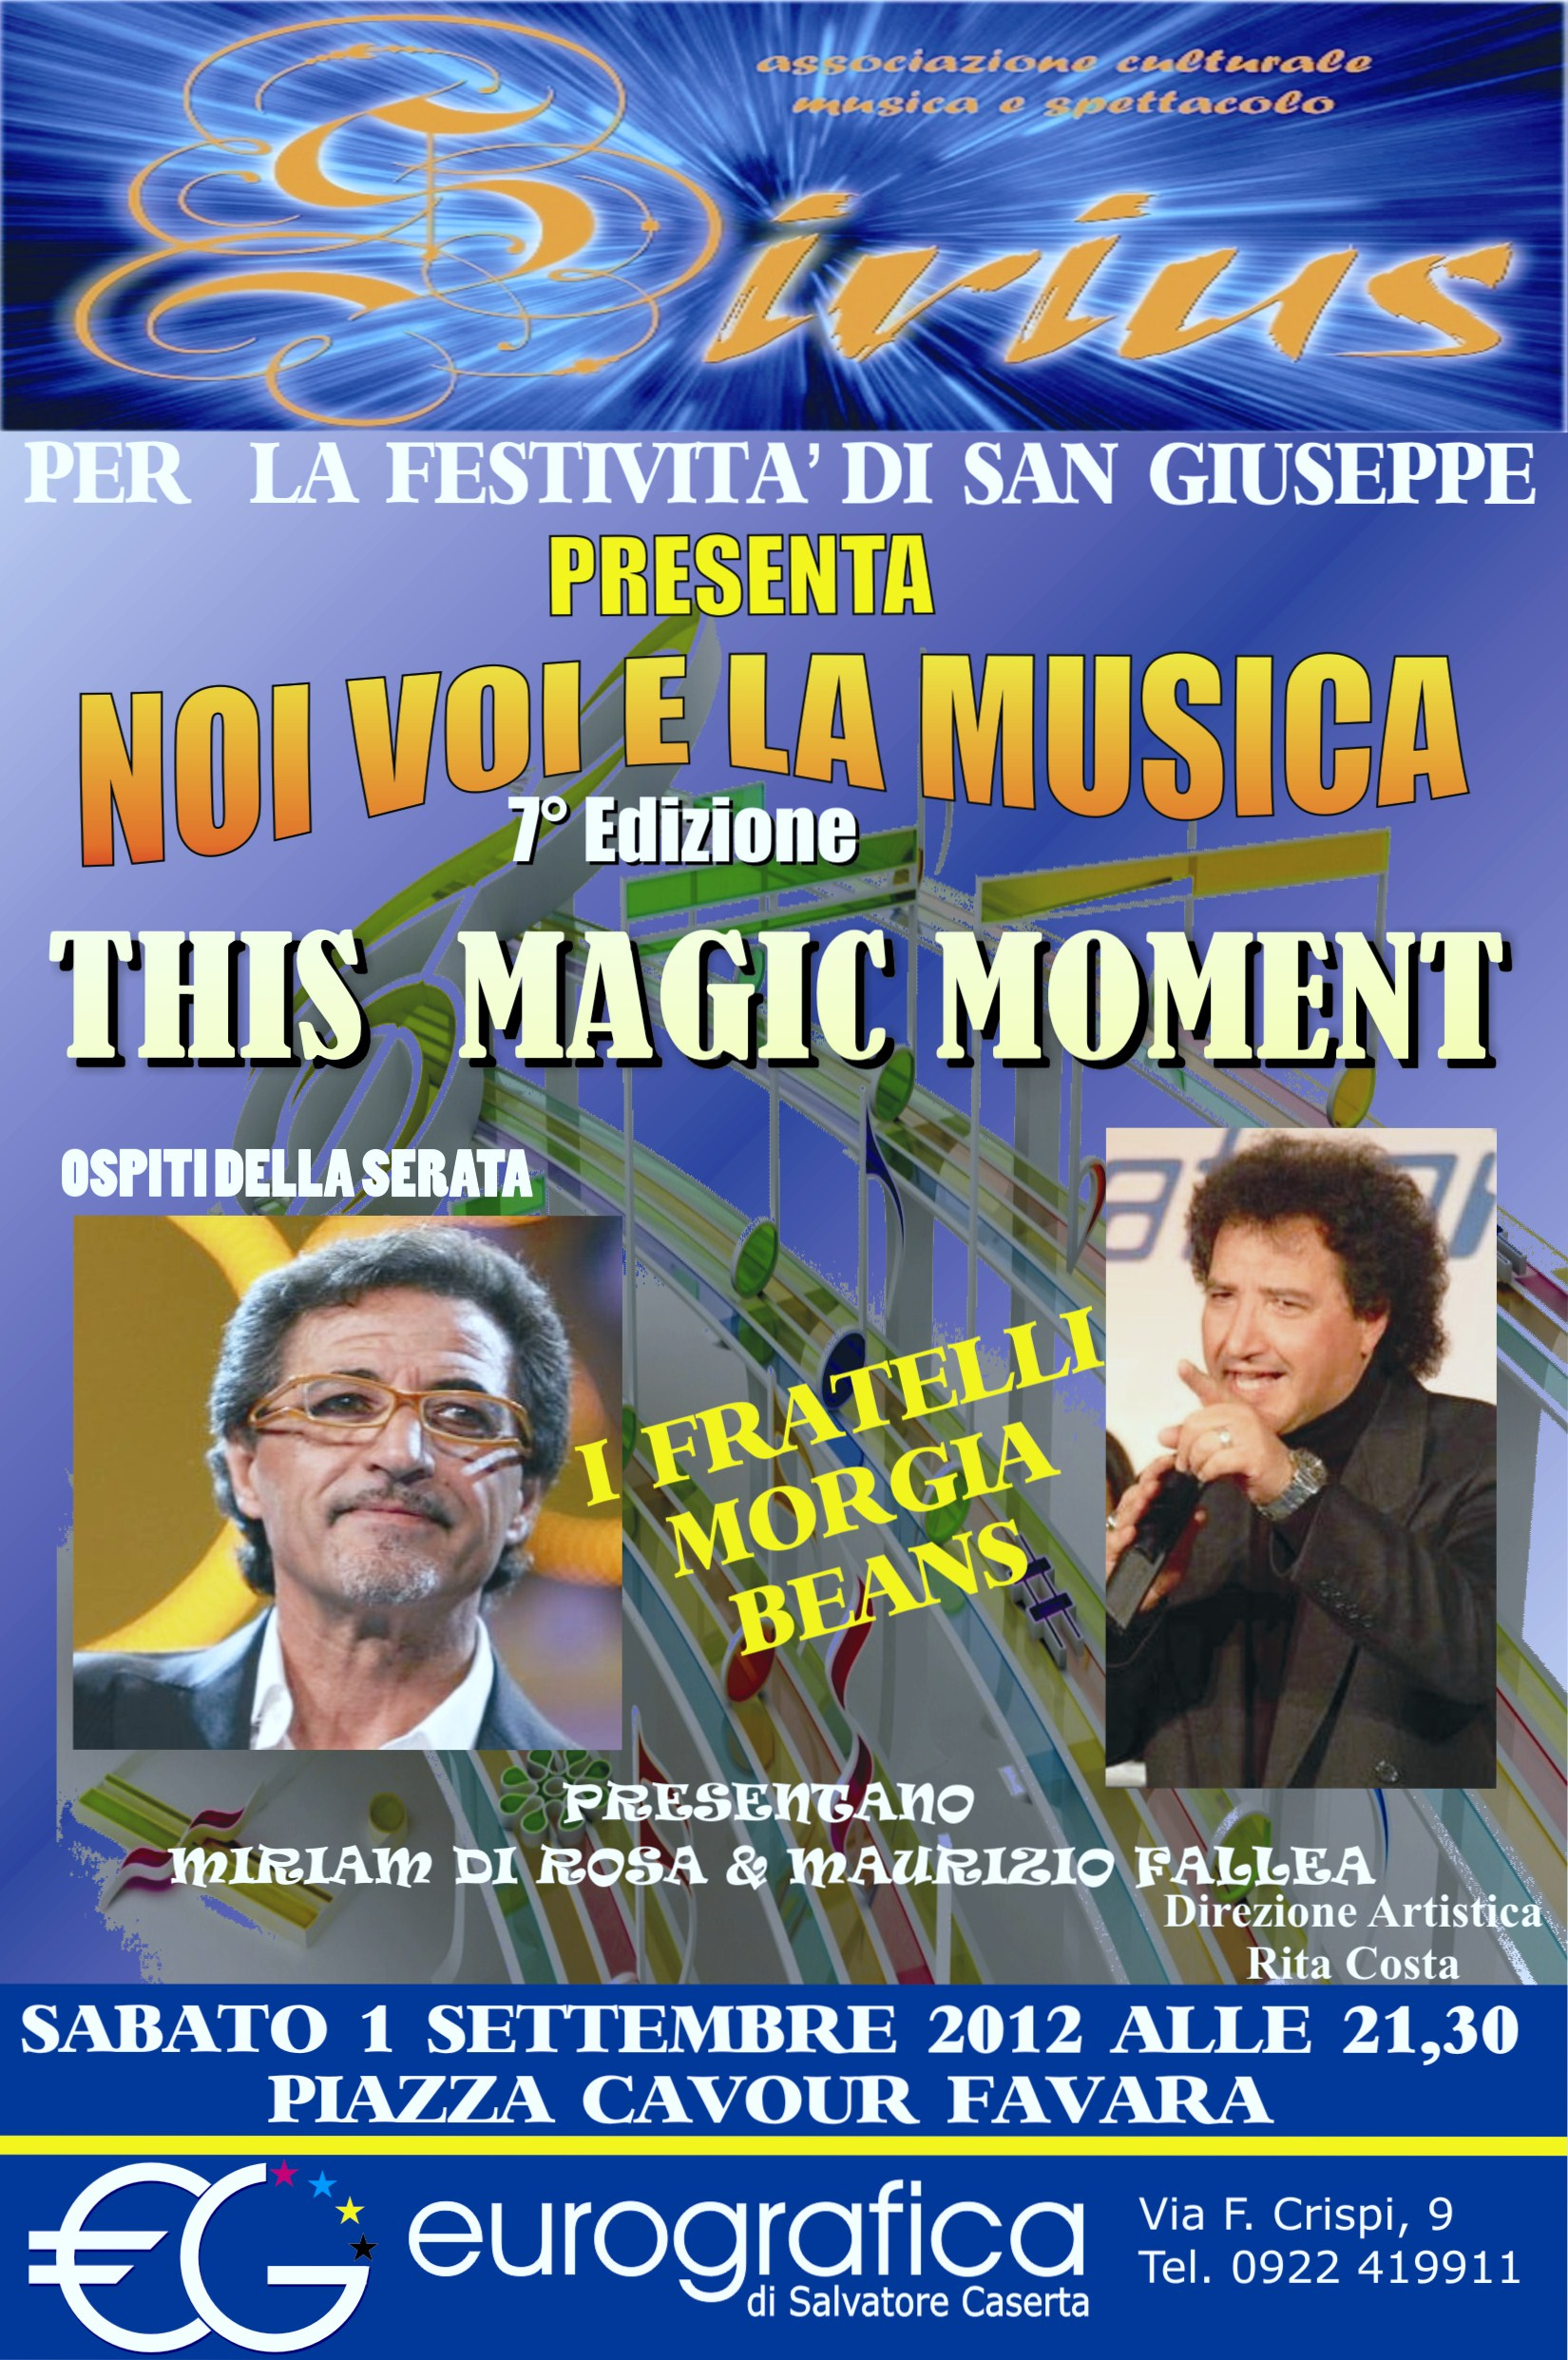 ''This Magic Moment'' lo spettacolo della scuola di canto Sirius e dei Beans sabato scorso a Favara